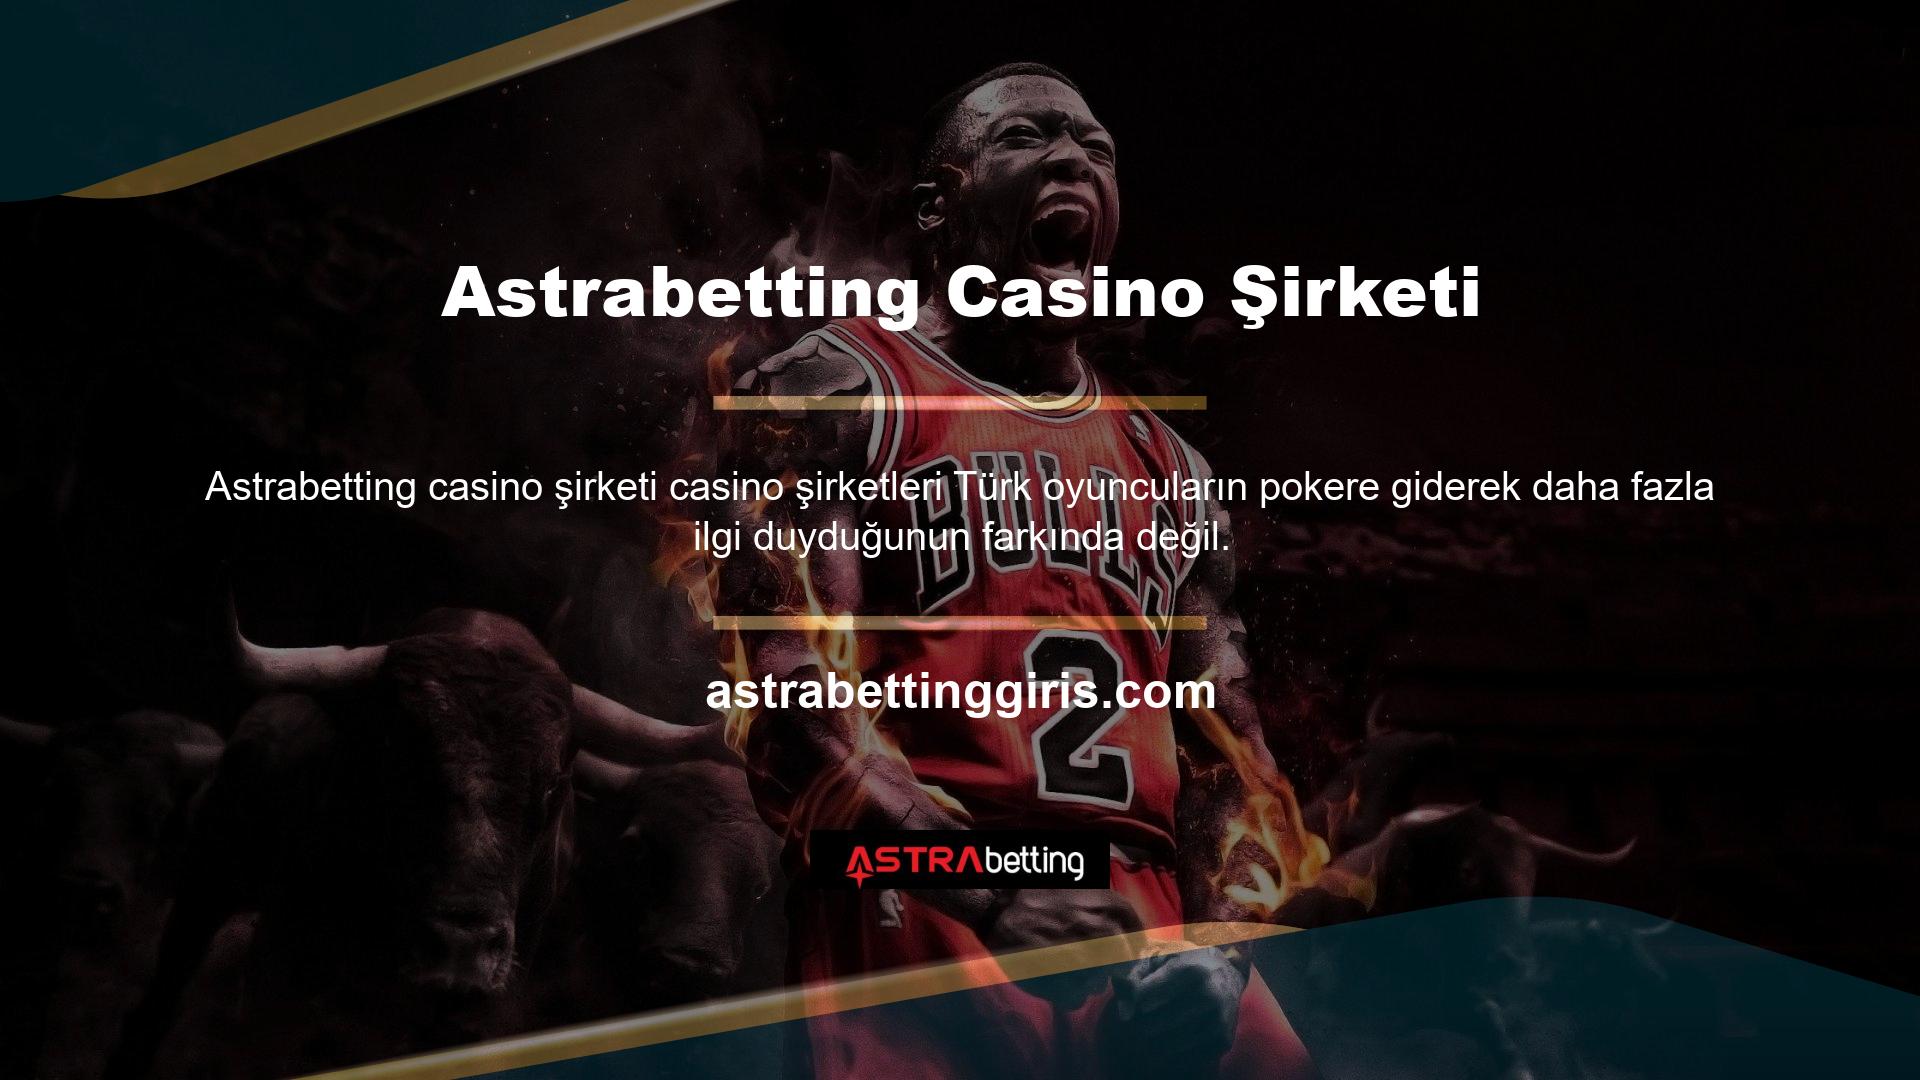 Astrabetting poker bölümüne bir göz atın ve hoşunuza giden bir seçenek bulacaksınız